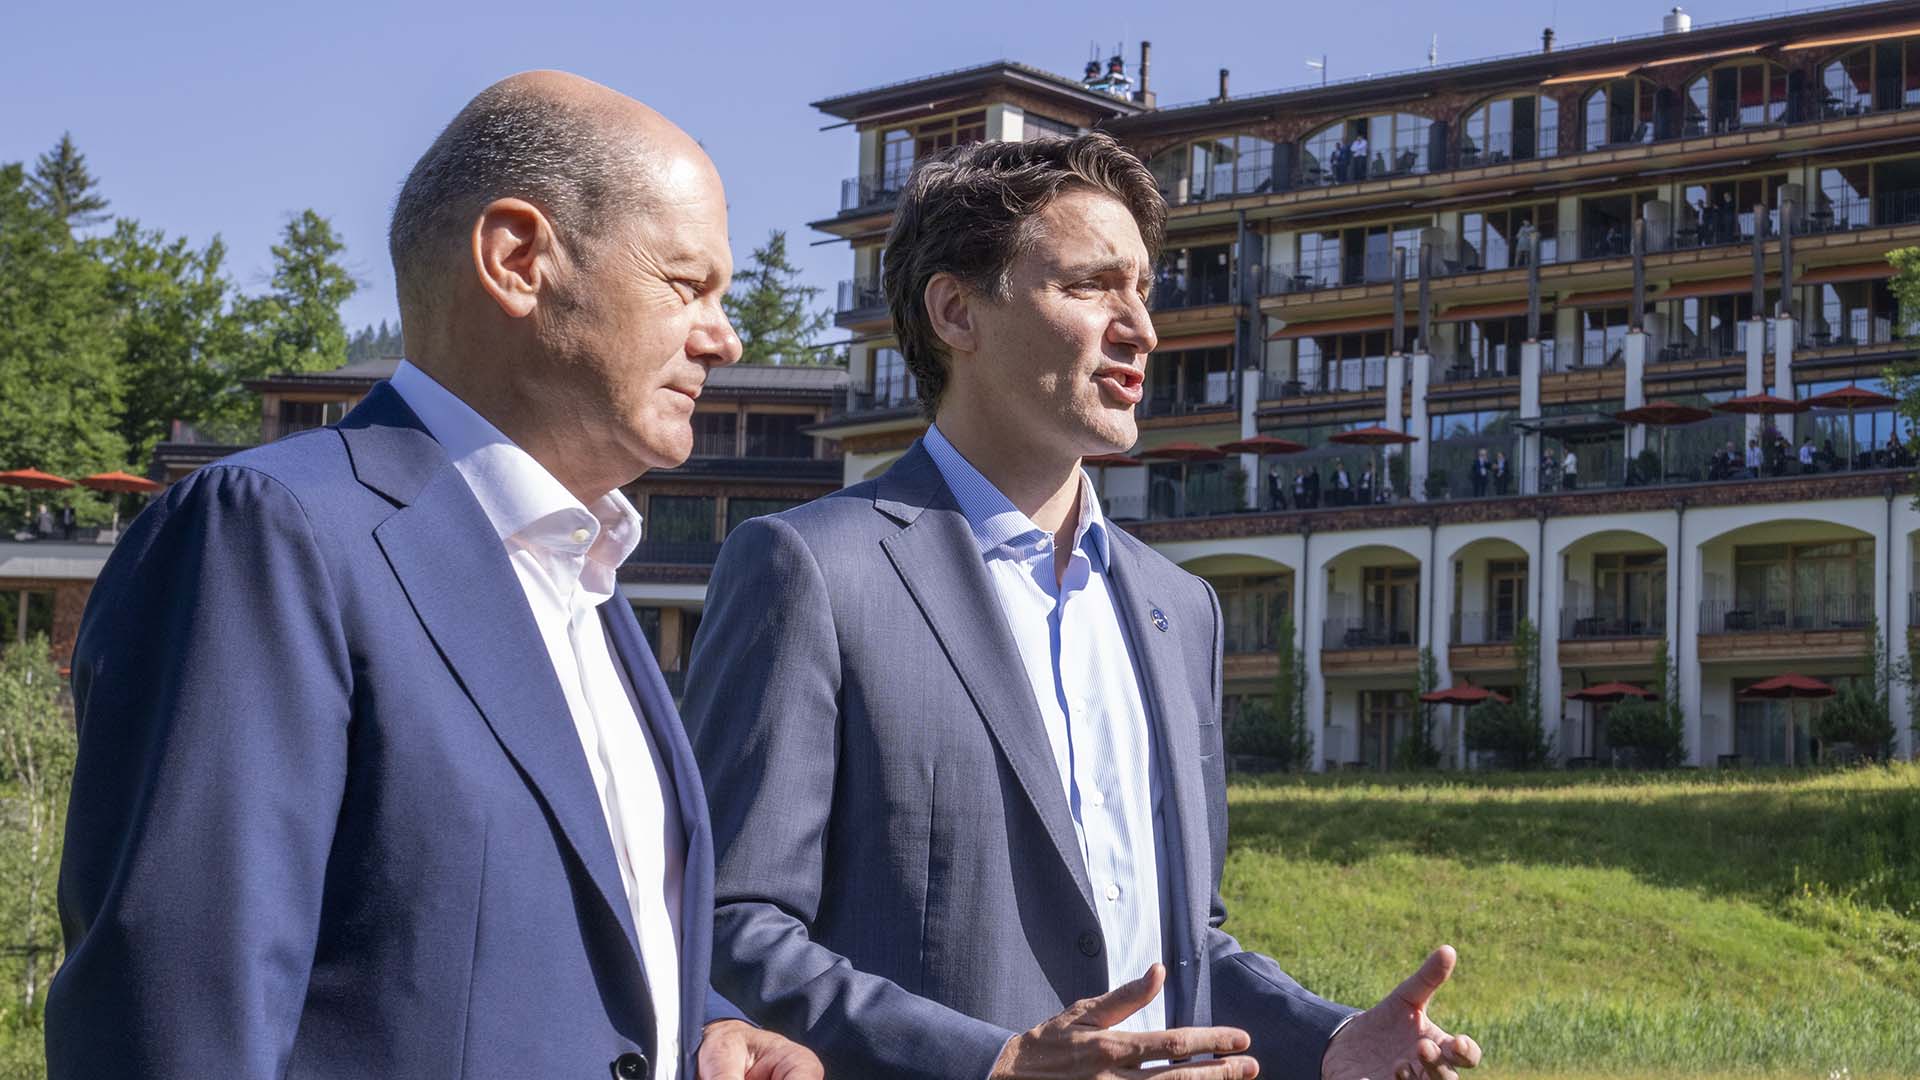 M. Trudeau accompagnera le chancelier à l'occasion de son bref voyage au Canada. Des arrêts sont aussi prévus à Montréal et à Toronto.